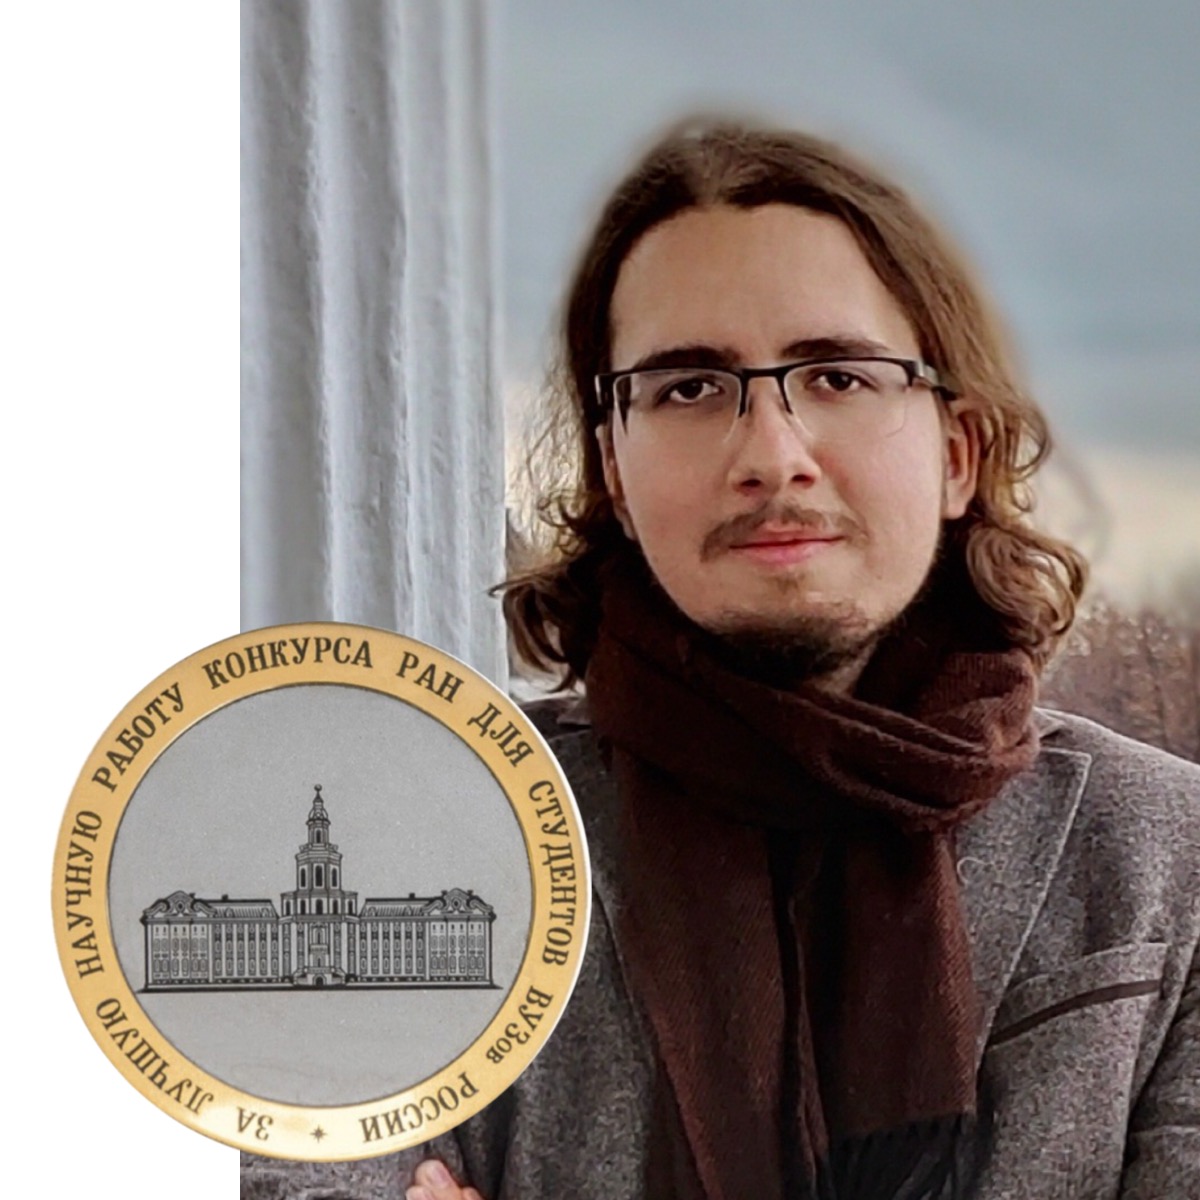 Студенту М.А. Симакову присуждена медаль Российской академии наук в области истории